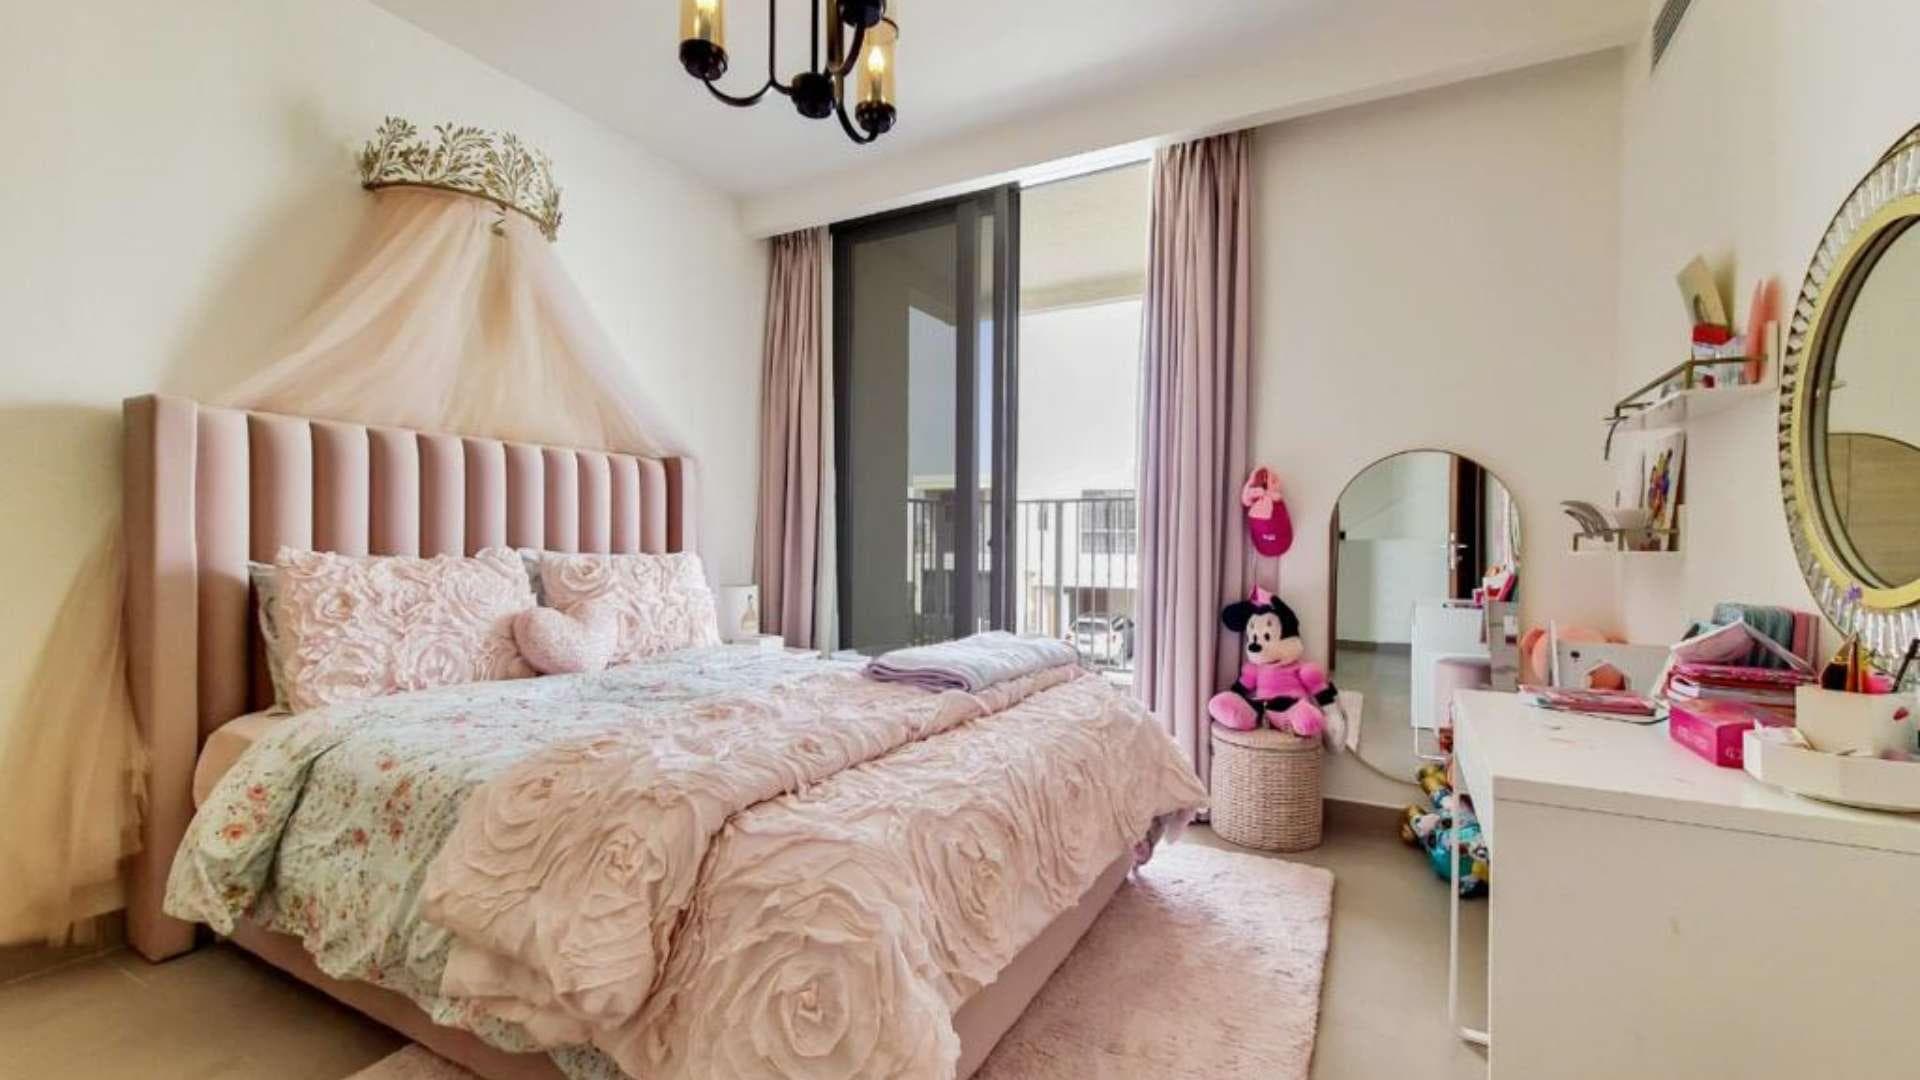 4 Bedroom Villa For Sale Sidra Villas Lp23787 14c50e79ac471100.jpg